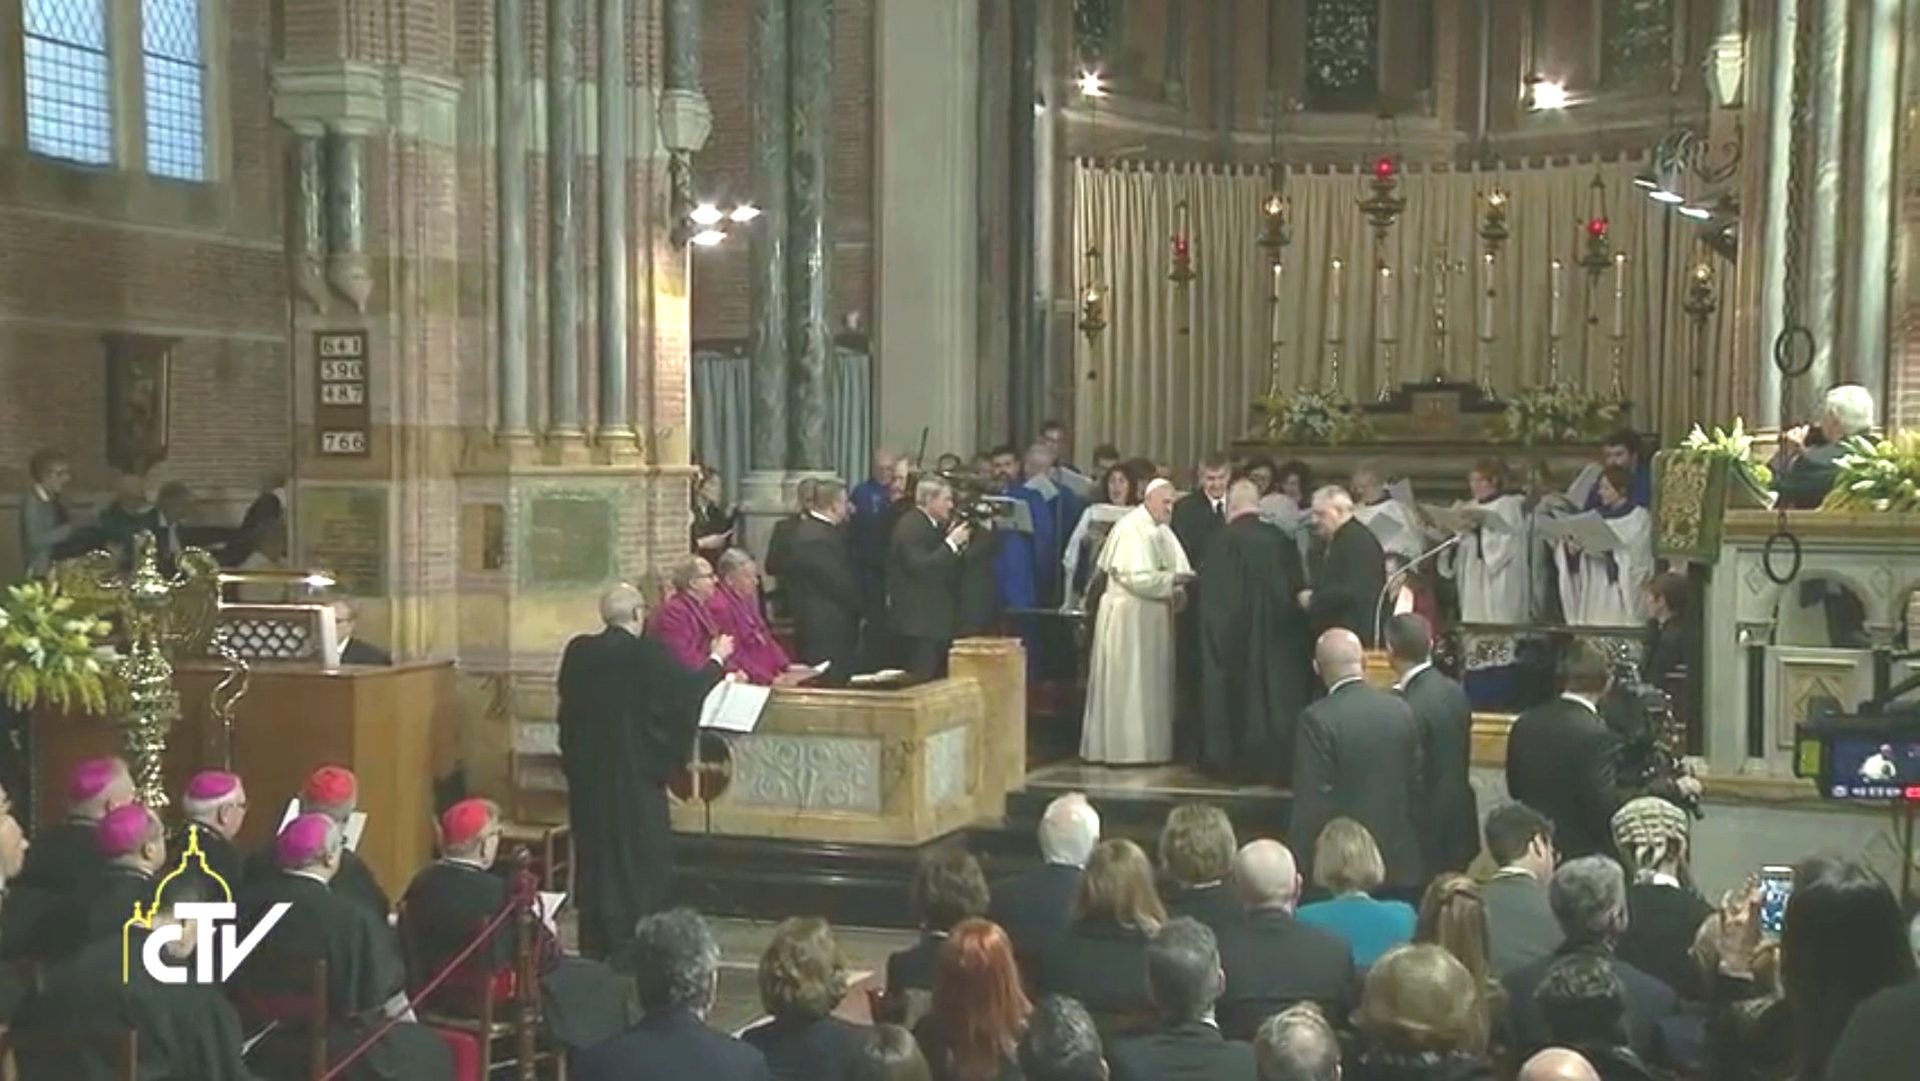 Le pape François acueilli à l'église anglicane de Rome (capture d'écran CTV)